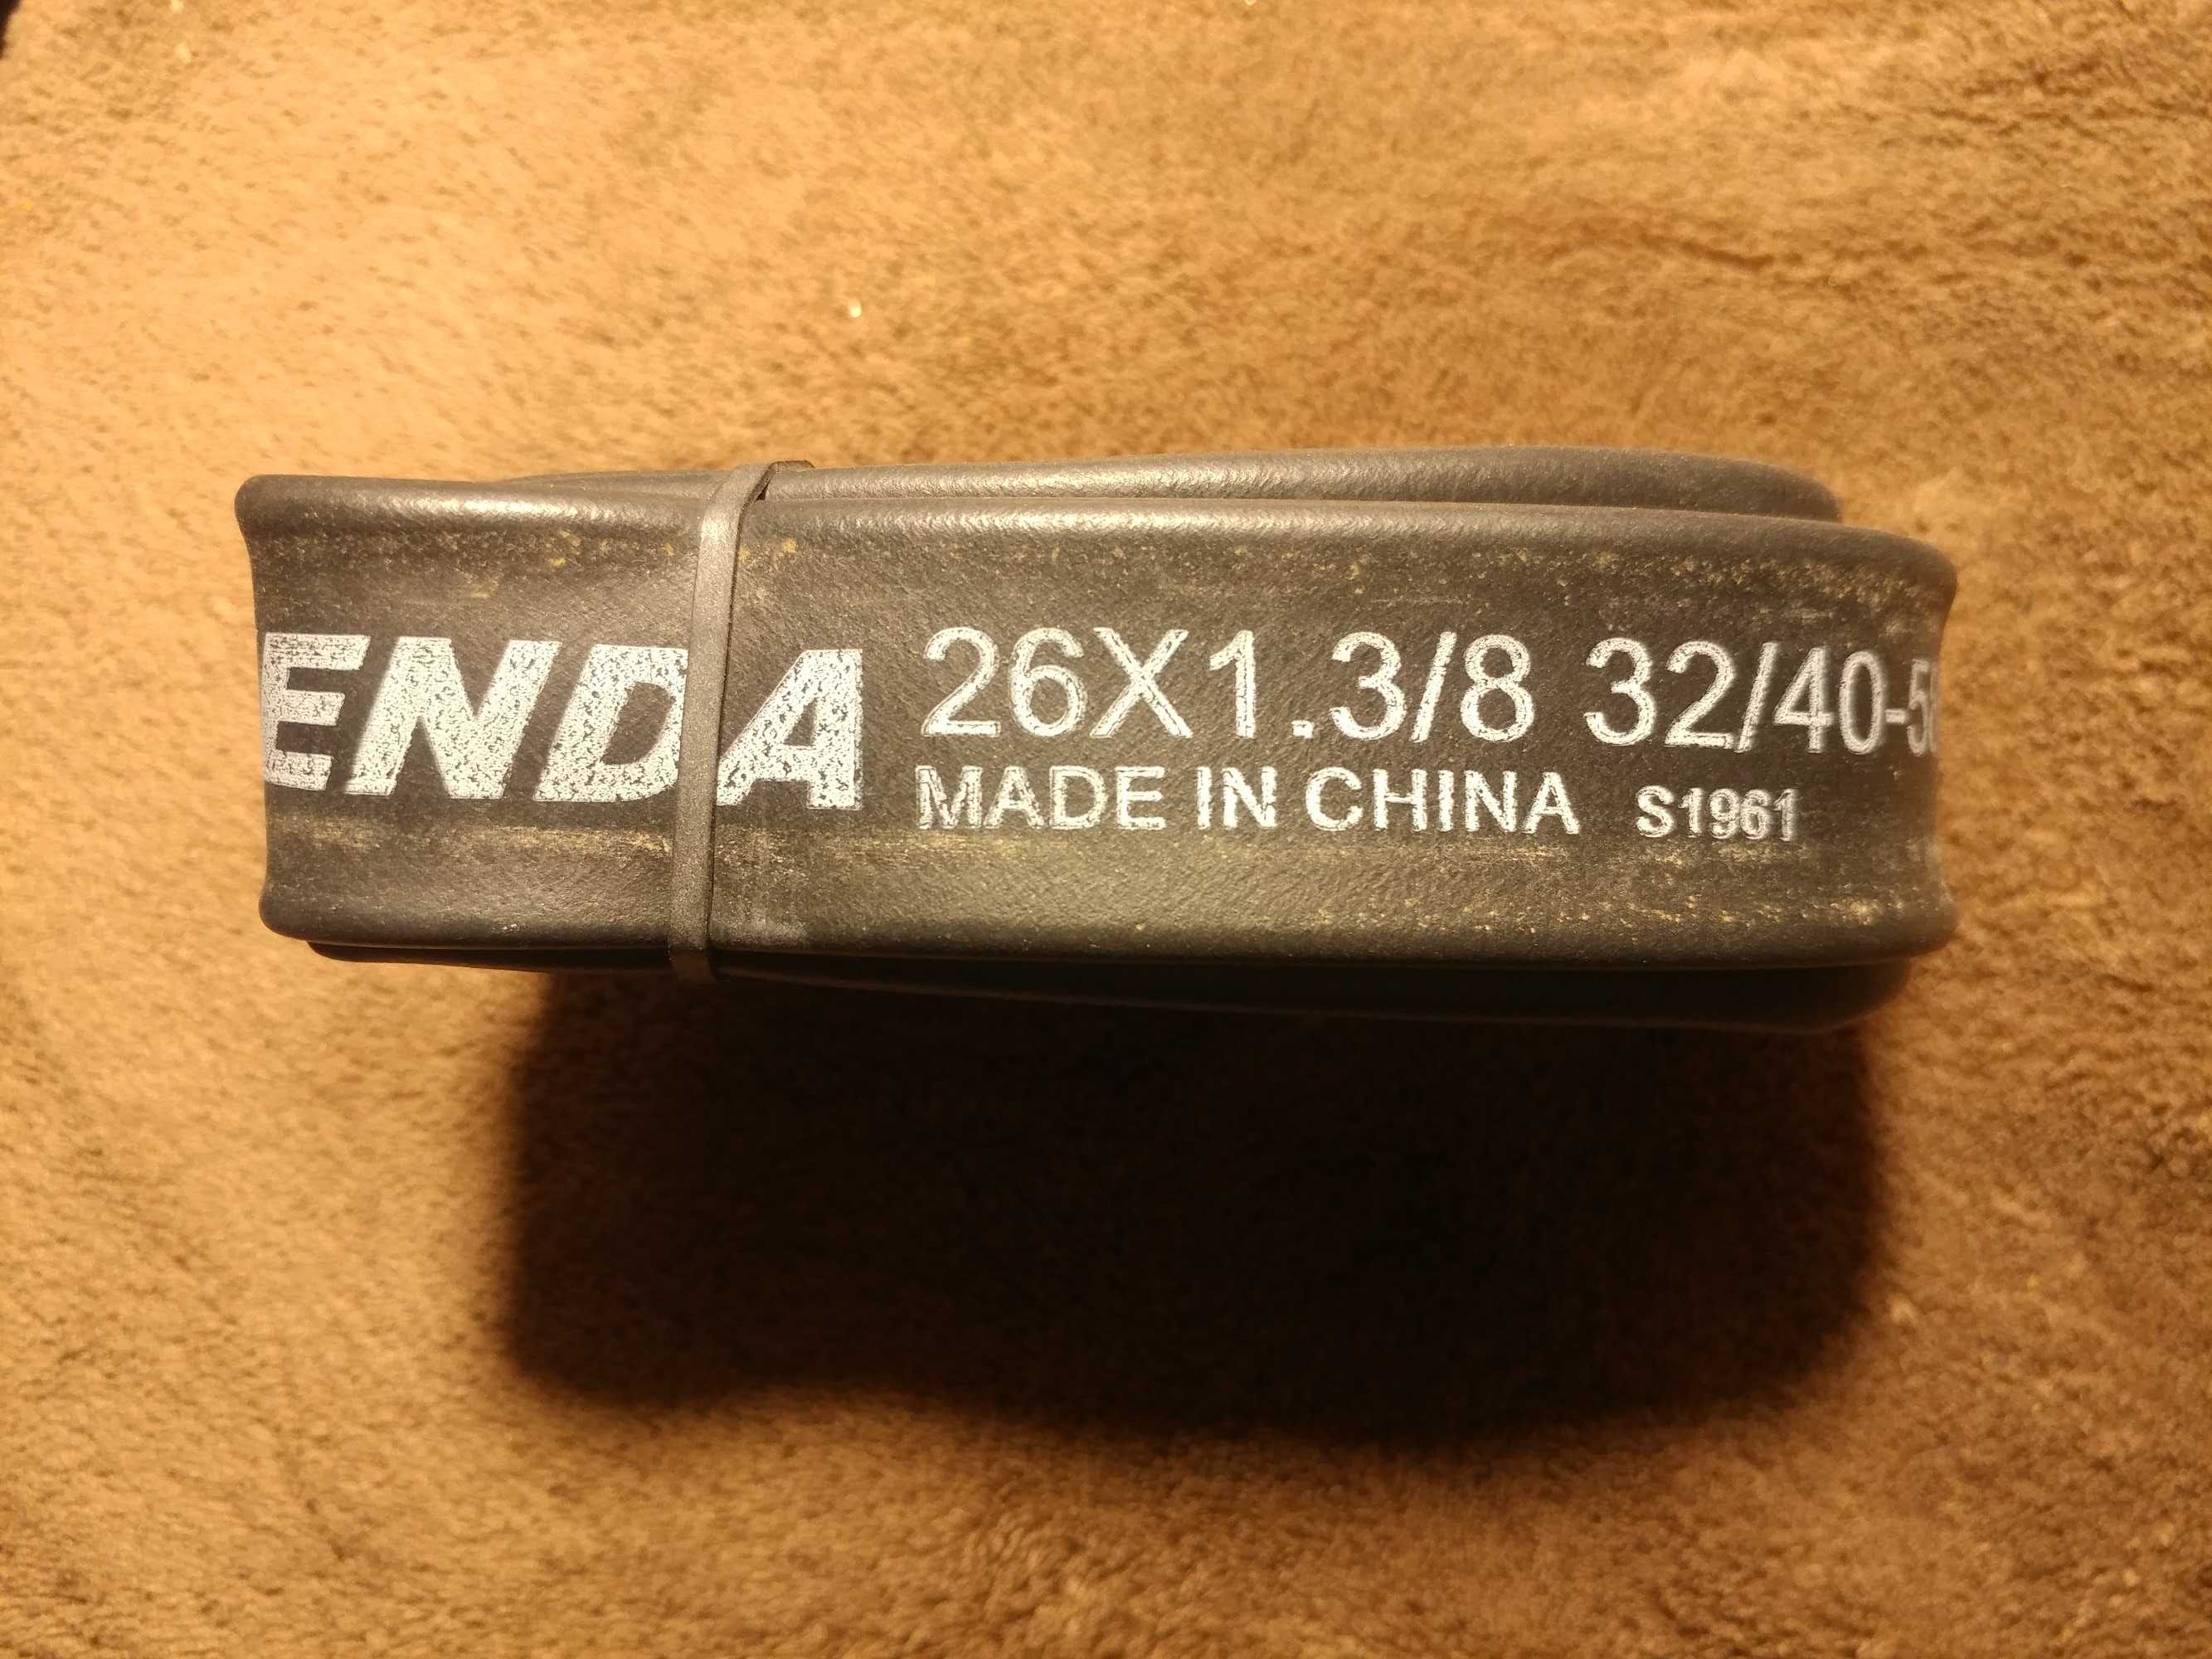 Вело камера Kenda 26" 1.375" 1-3/8 32/40 584-590 Dunlop